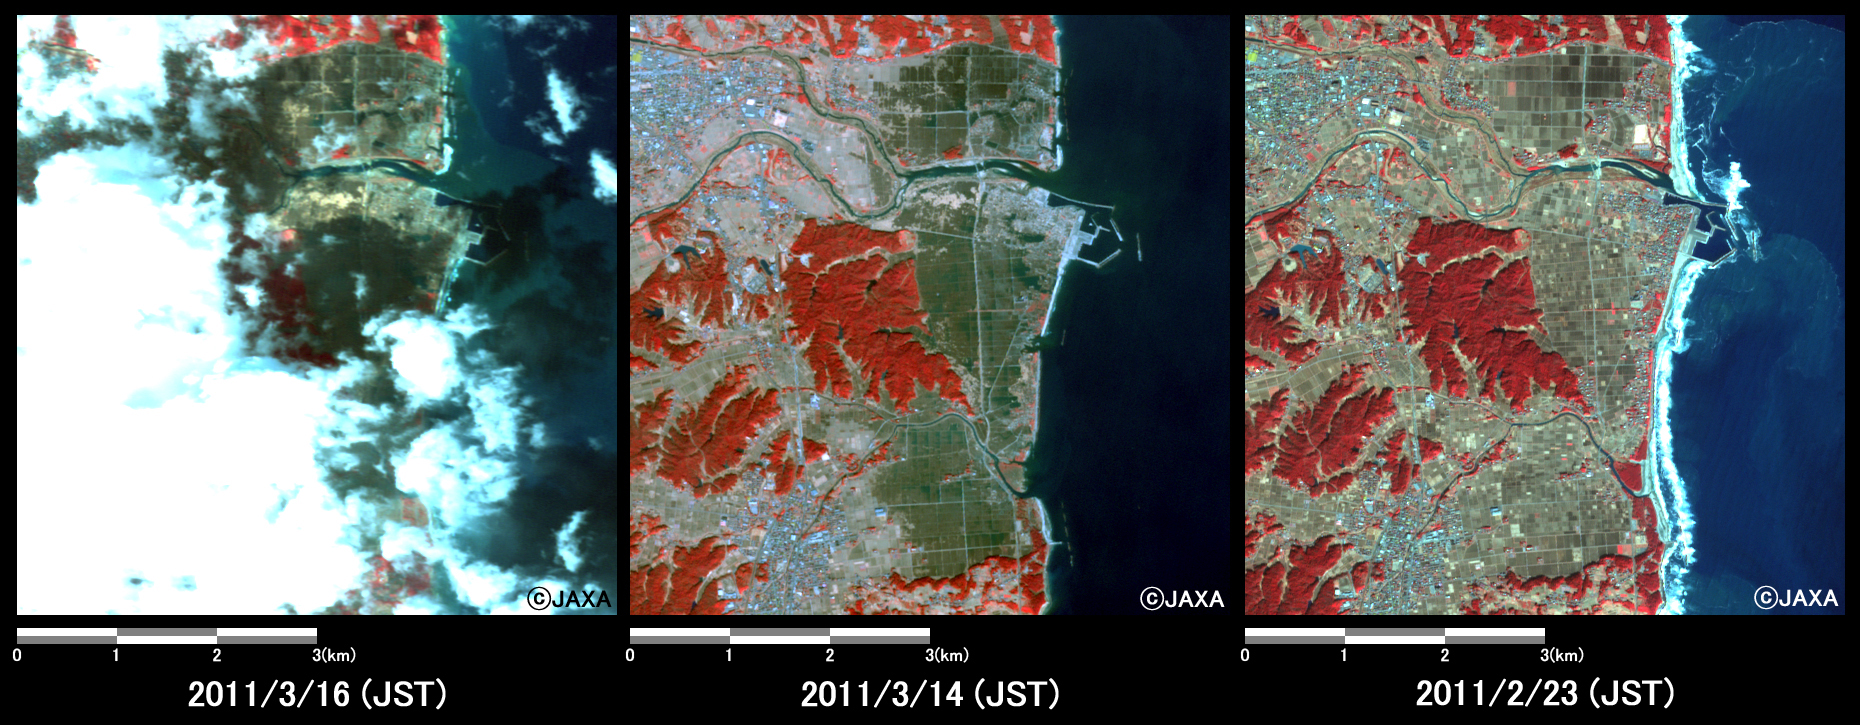 図3: 福島県浪江町請戸港付近の冠水の様子(約6km×6kmのエリア)